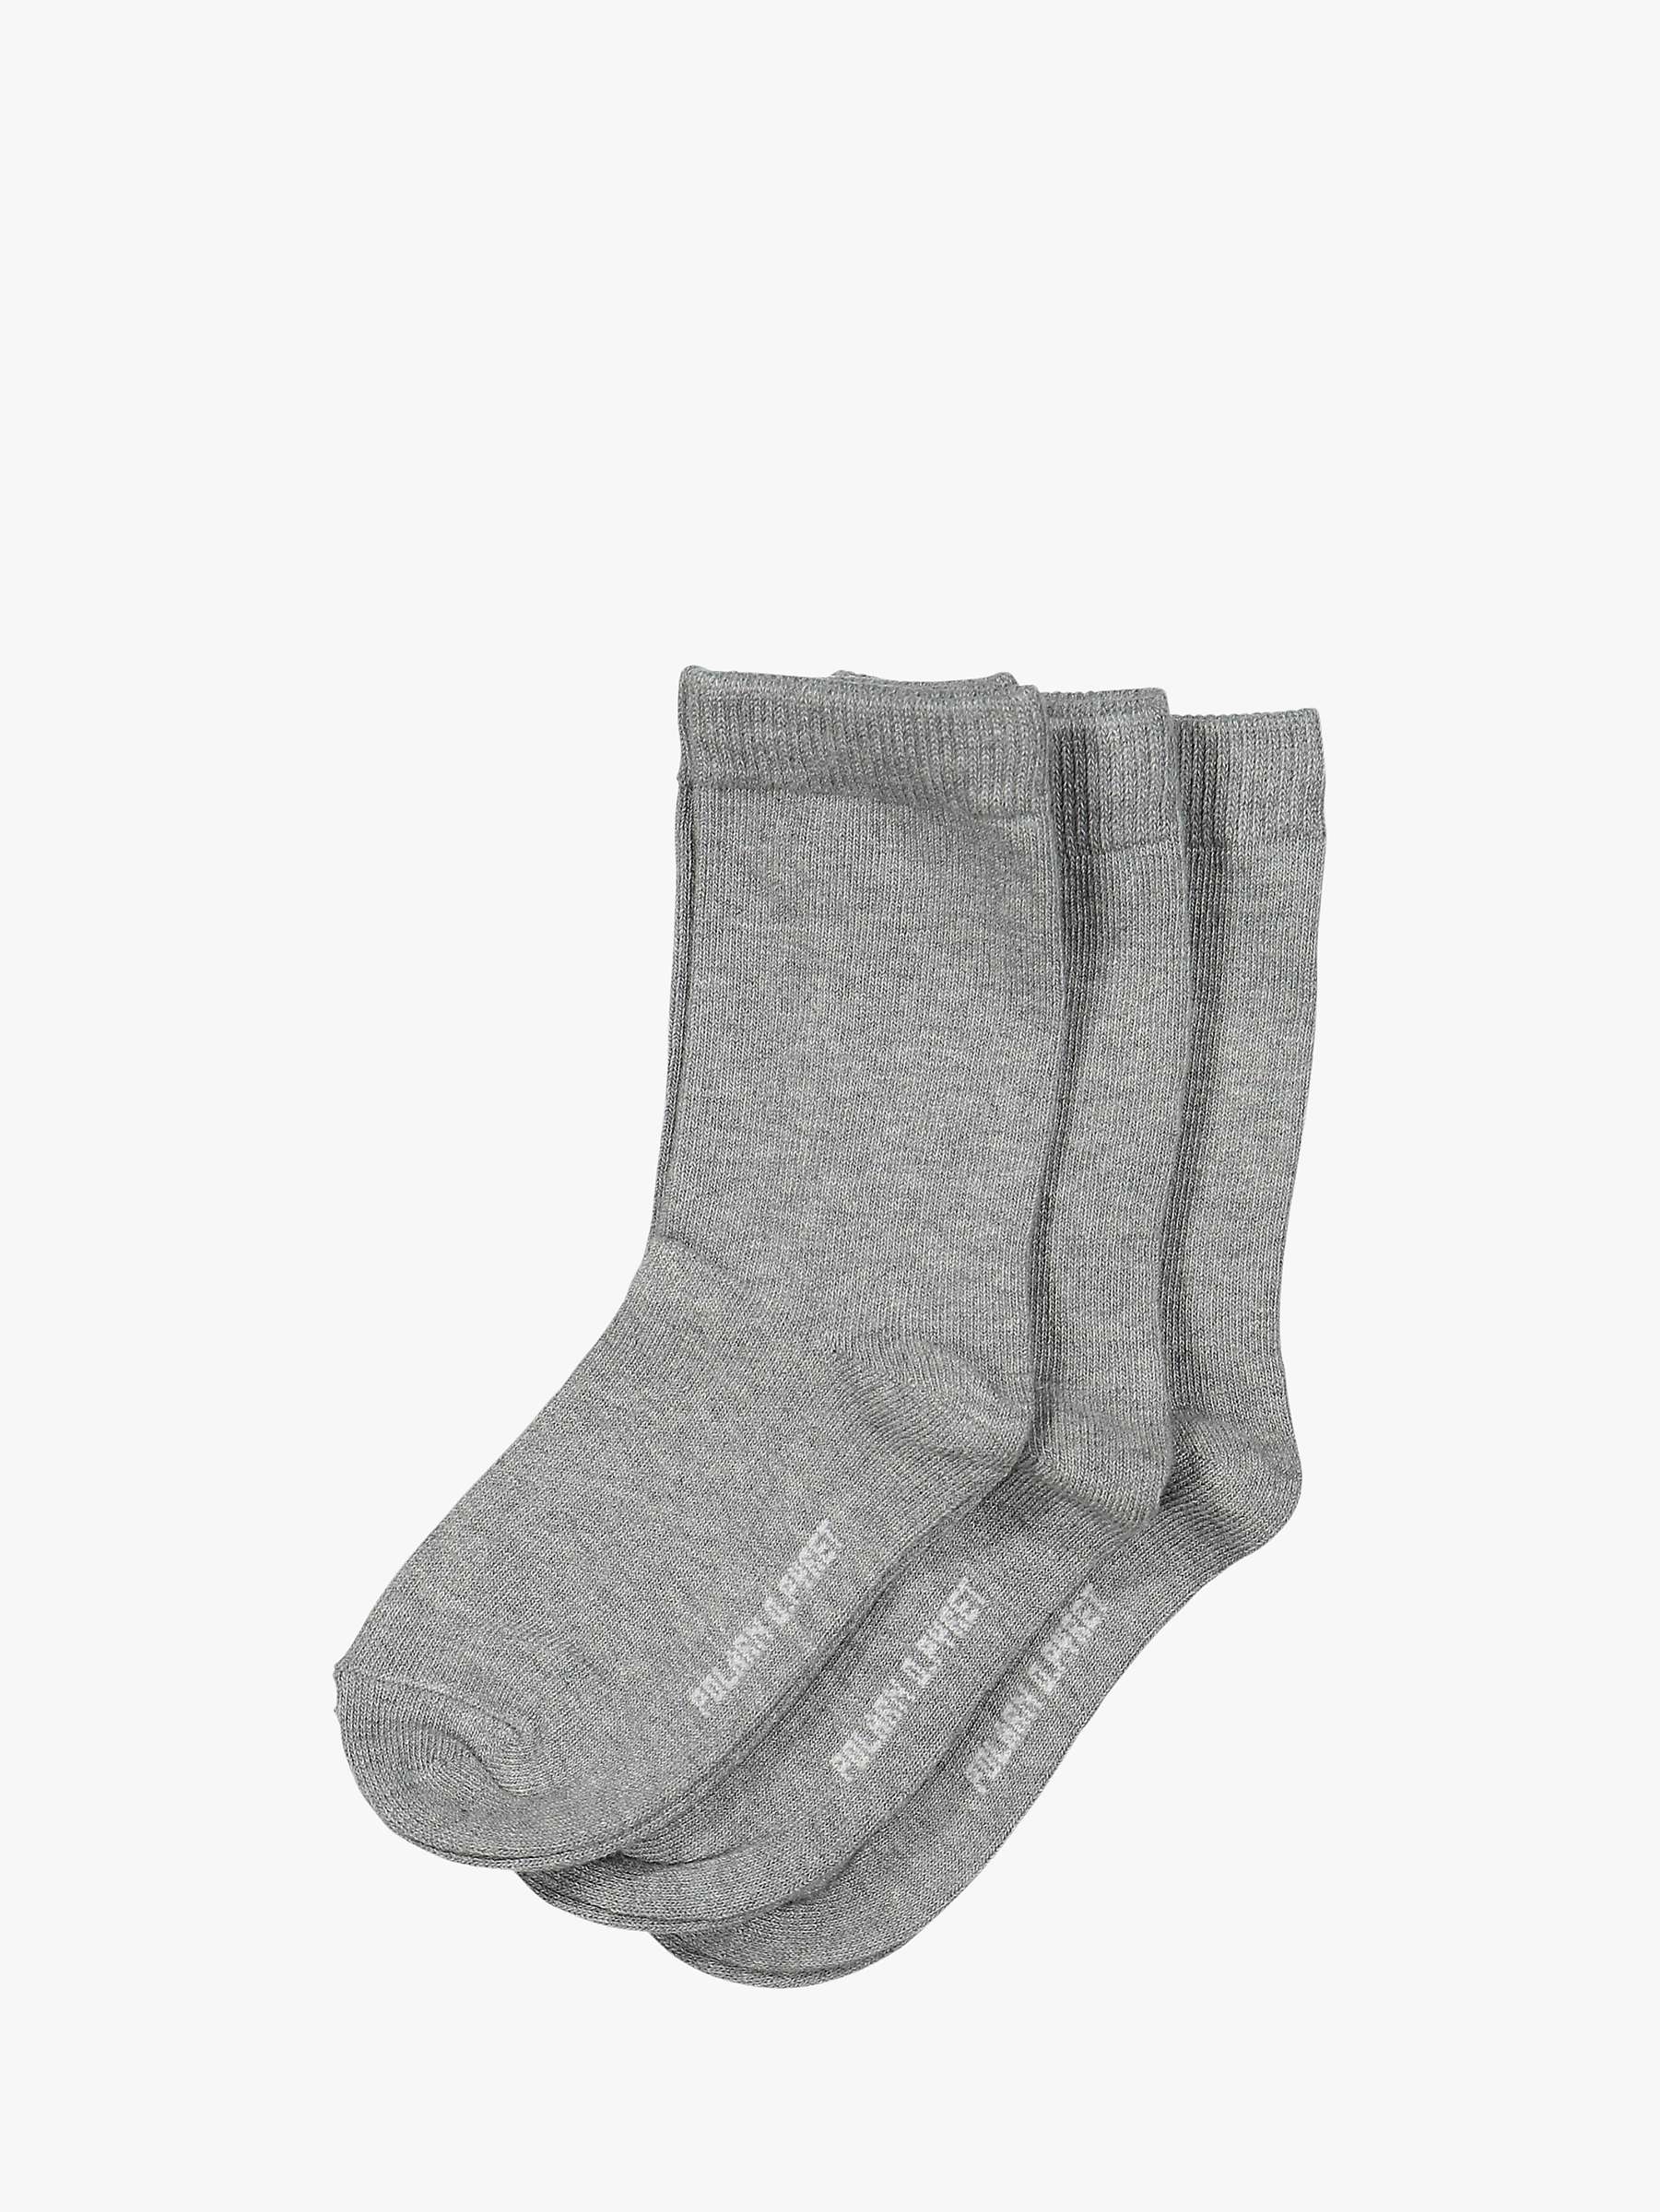 Buy Polarn O. Pyret Children's Plain Socks, Pack of 3 Online at johnlewis.com